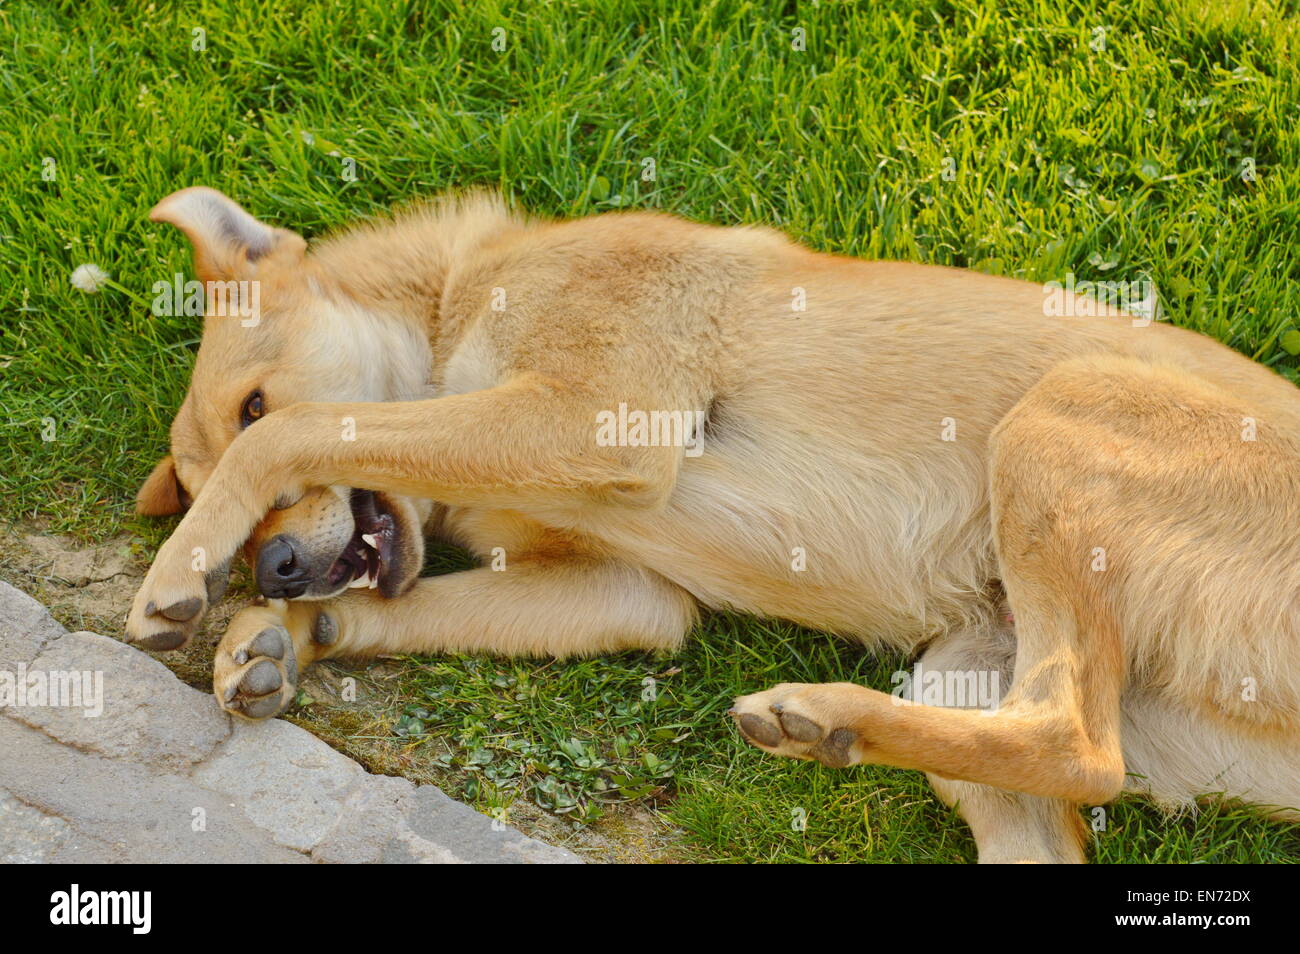 Sleepy Dog con arancio rossastro fur giacente in erba Foto Stock